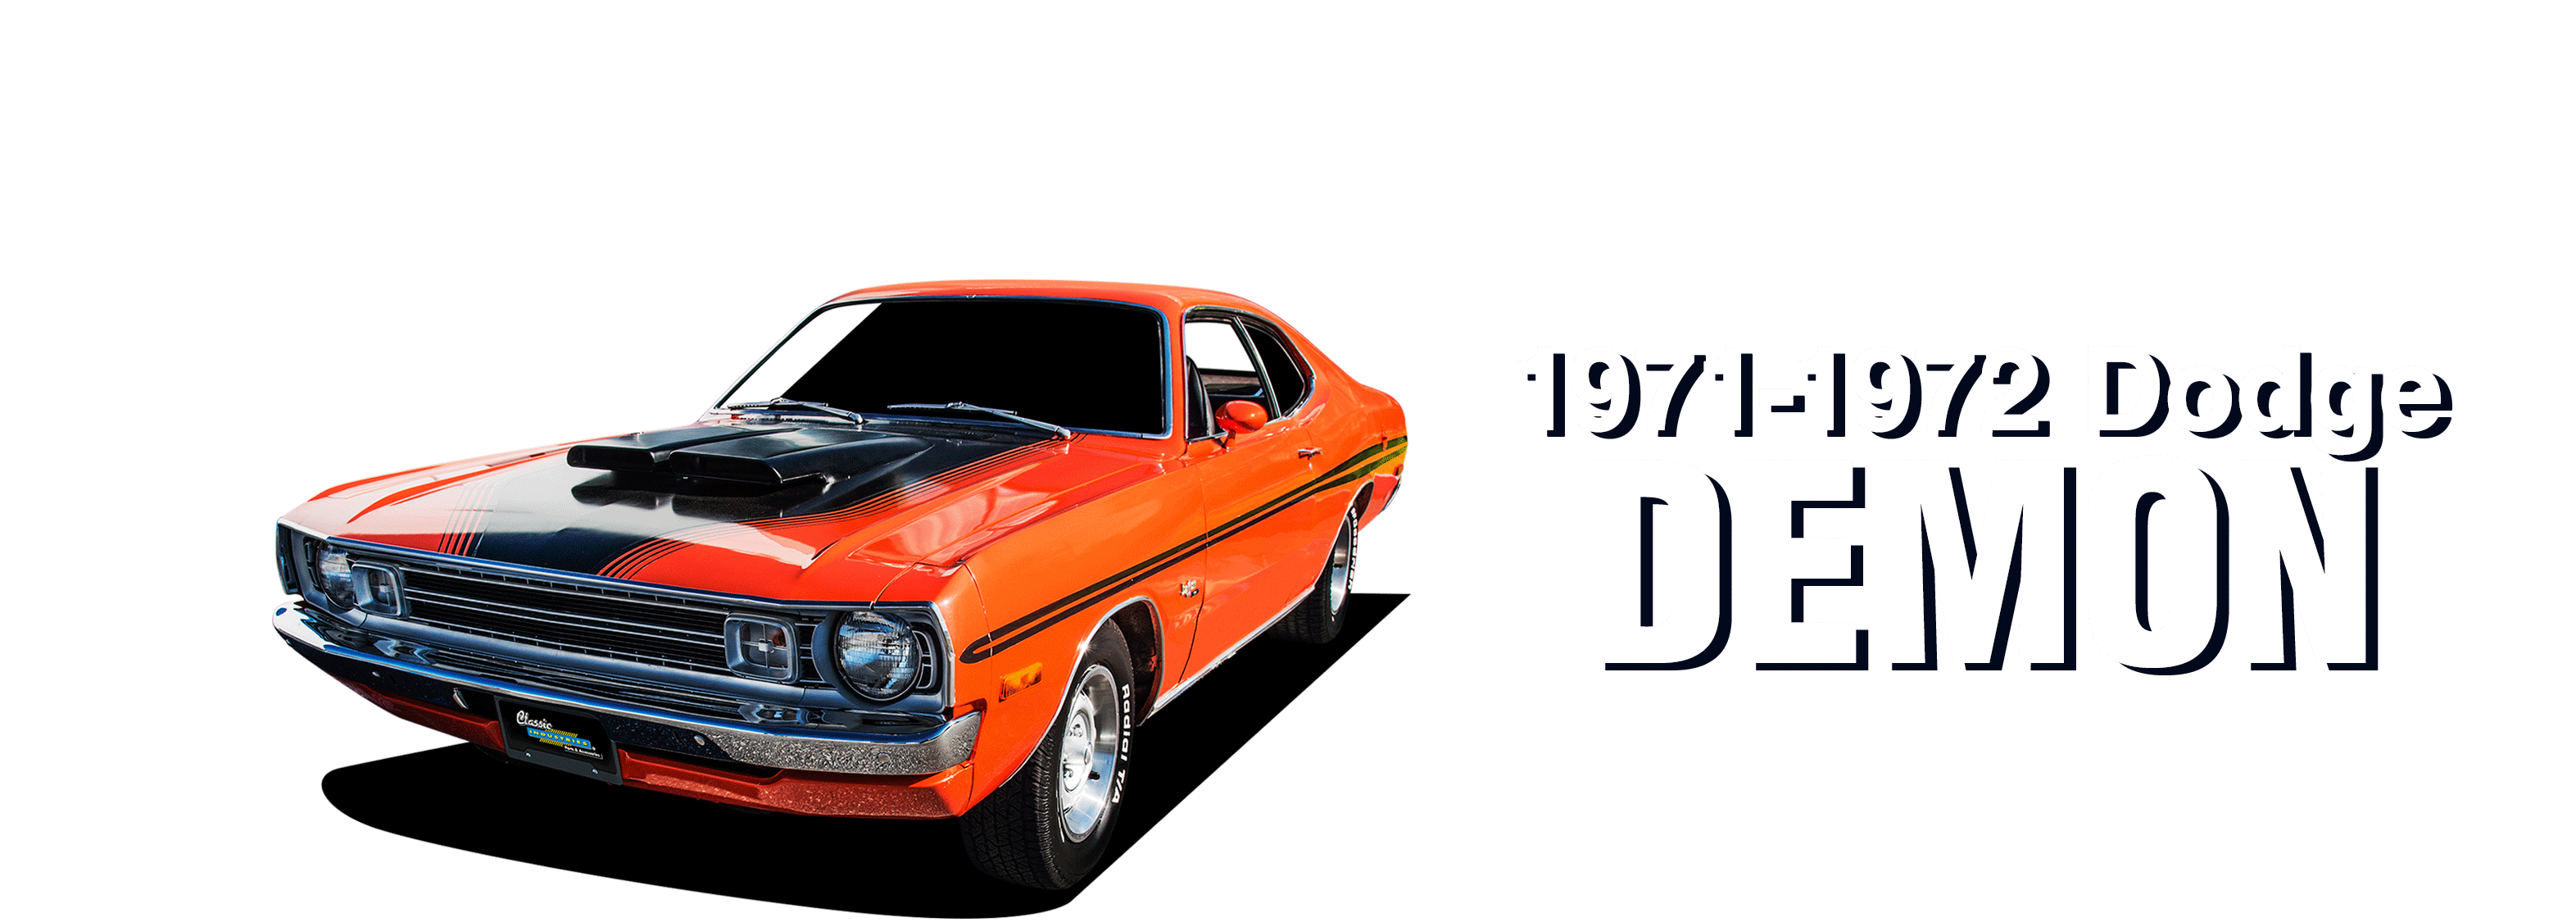 Dodge-Demon-vehicle-desktop